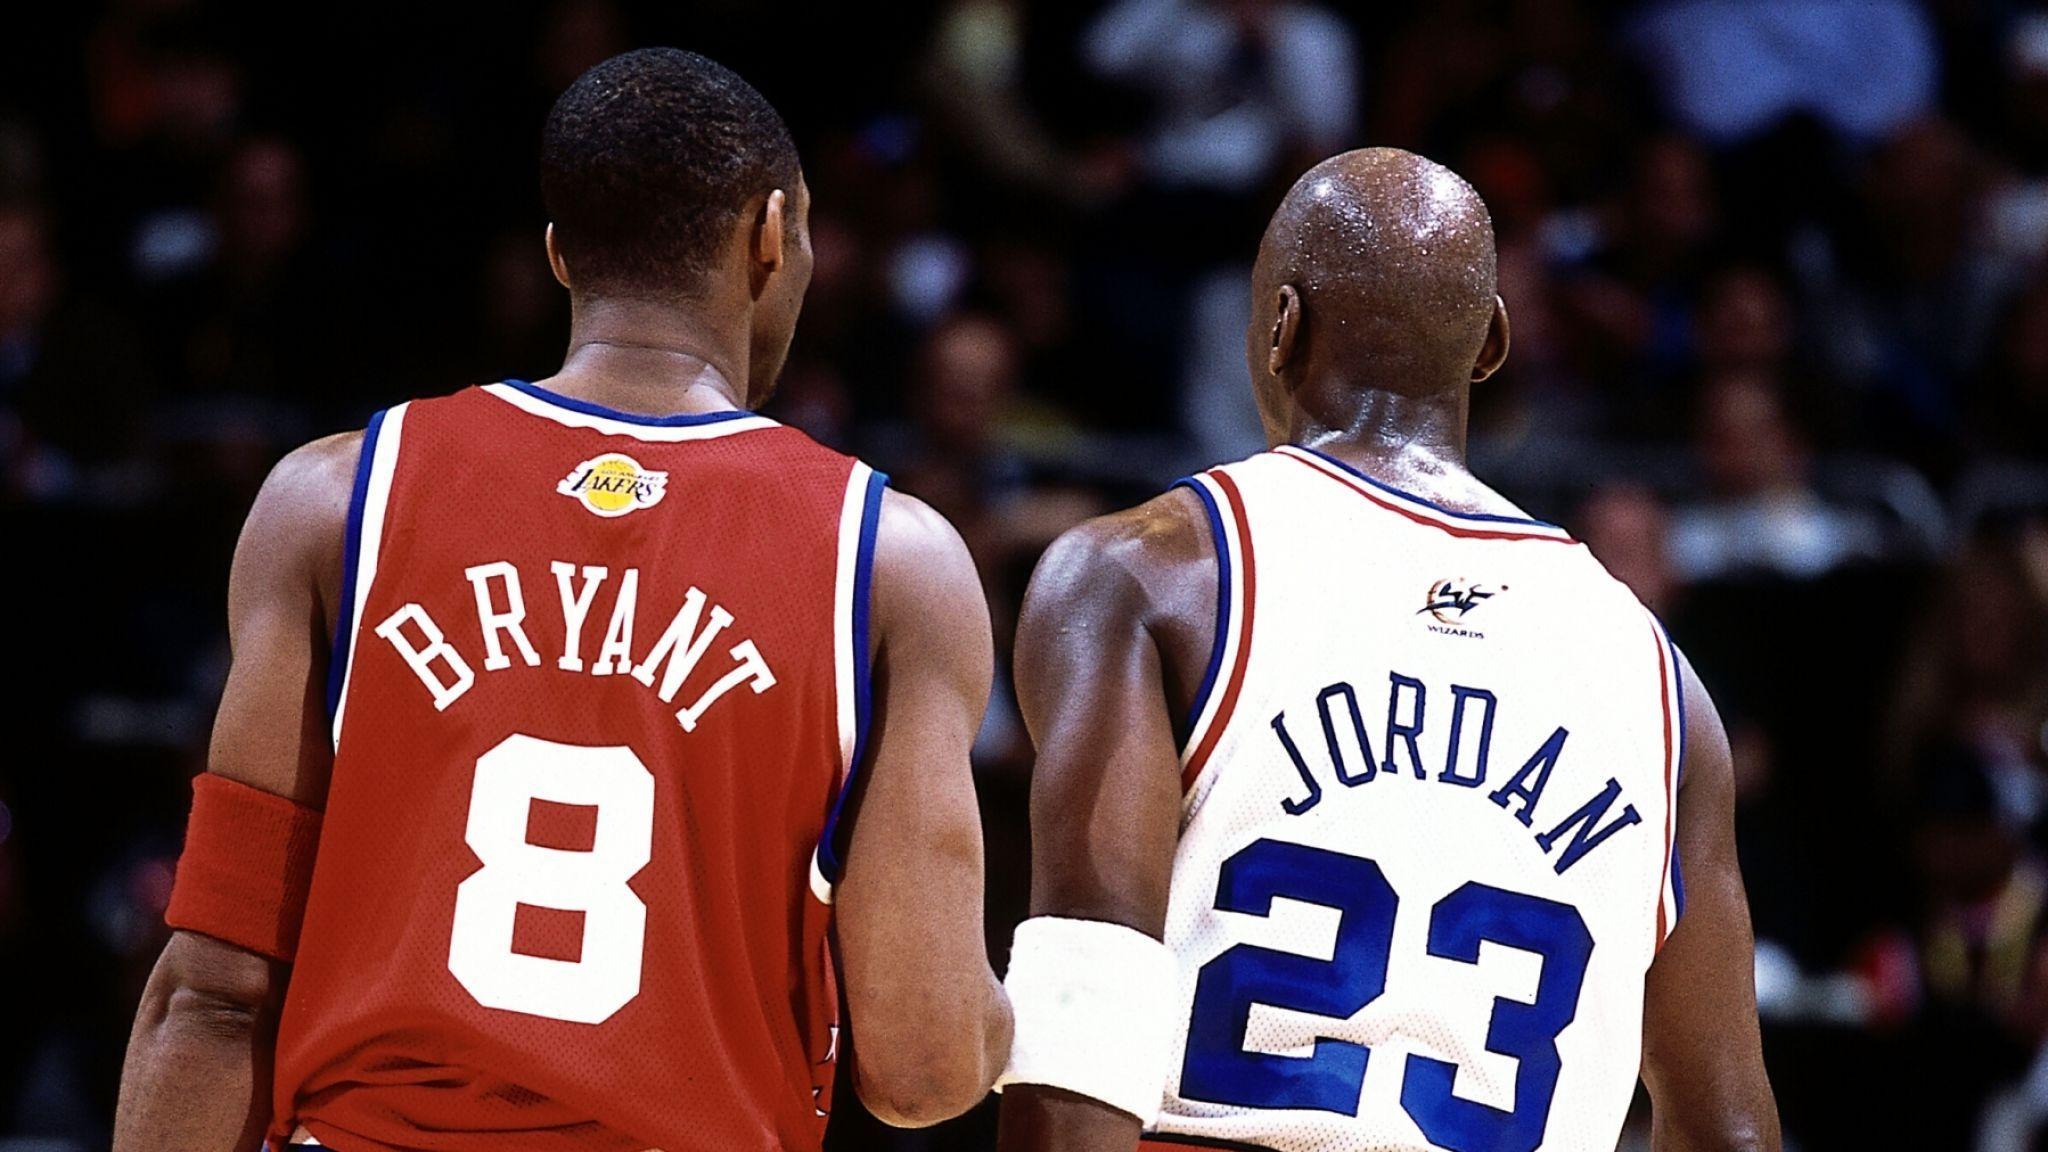 Kobe Bryant and Michael Jordan Wallpapers - Top Free Kobe Bryant and Michael Jordan Backgrounds